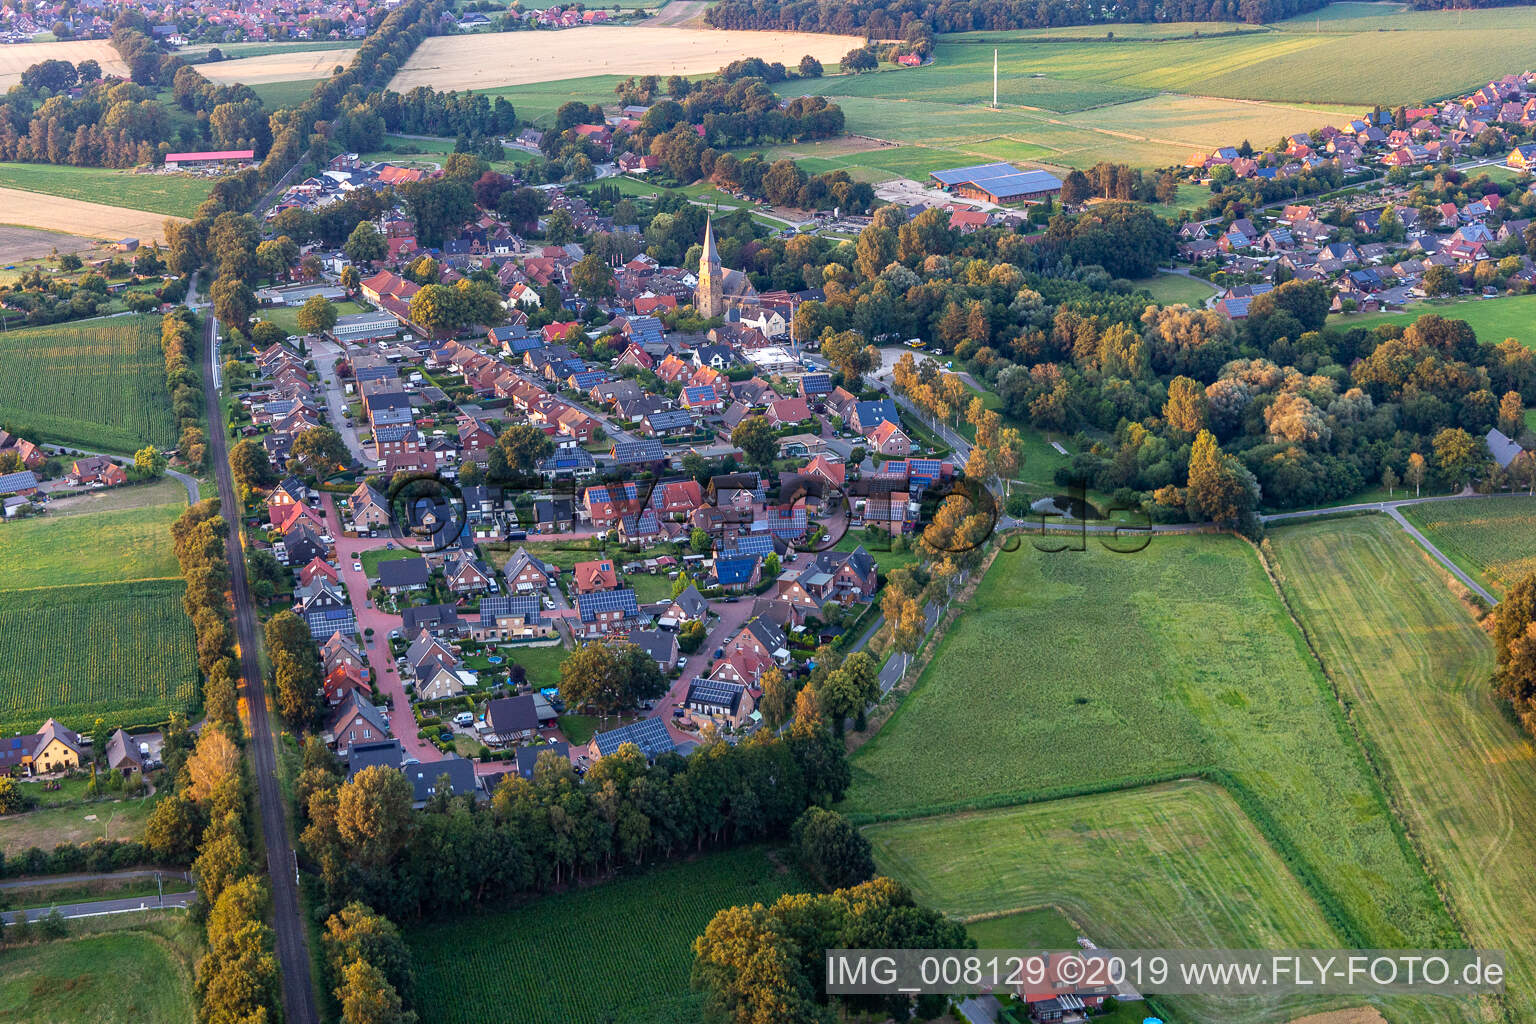 Aerial view of Klein Reken in the state North Rhine-Westphalia, Germany